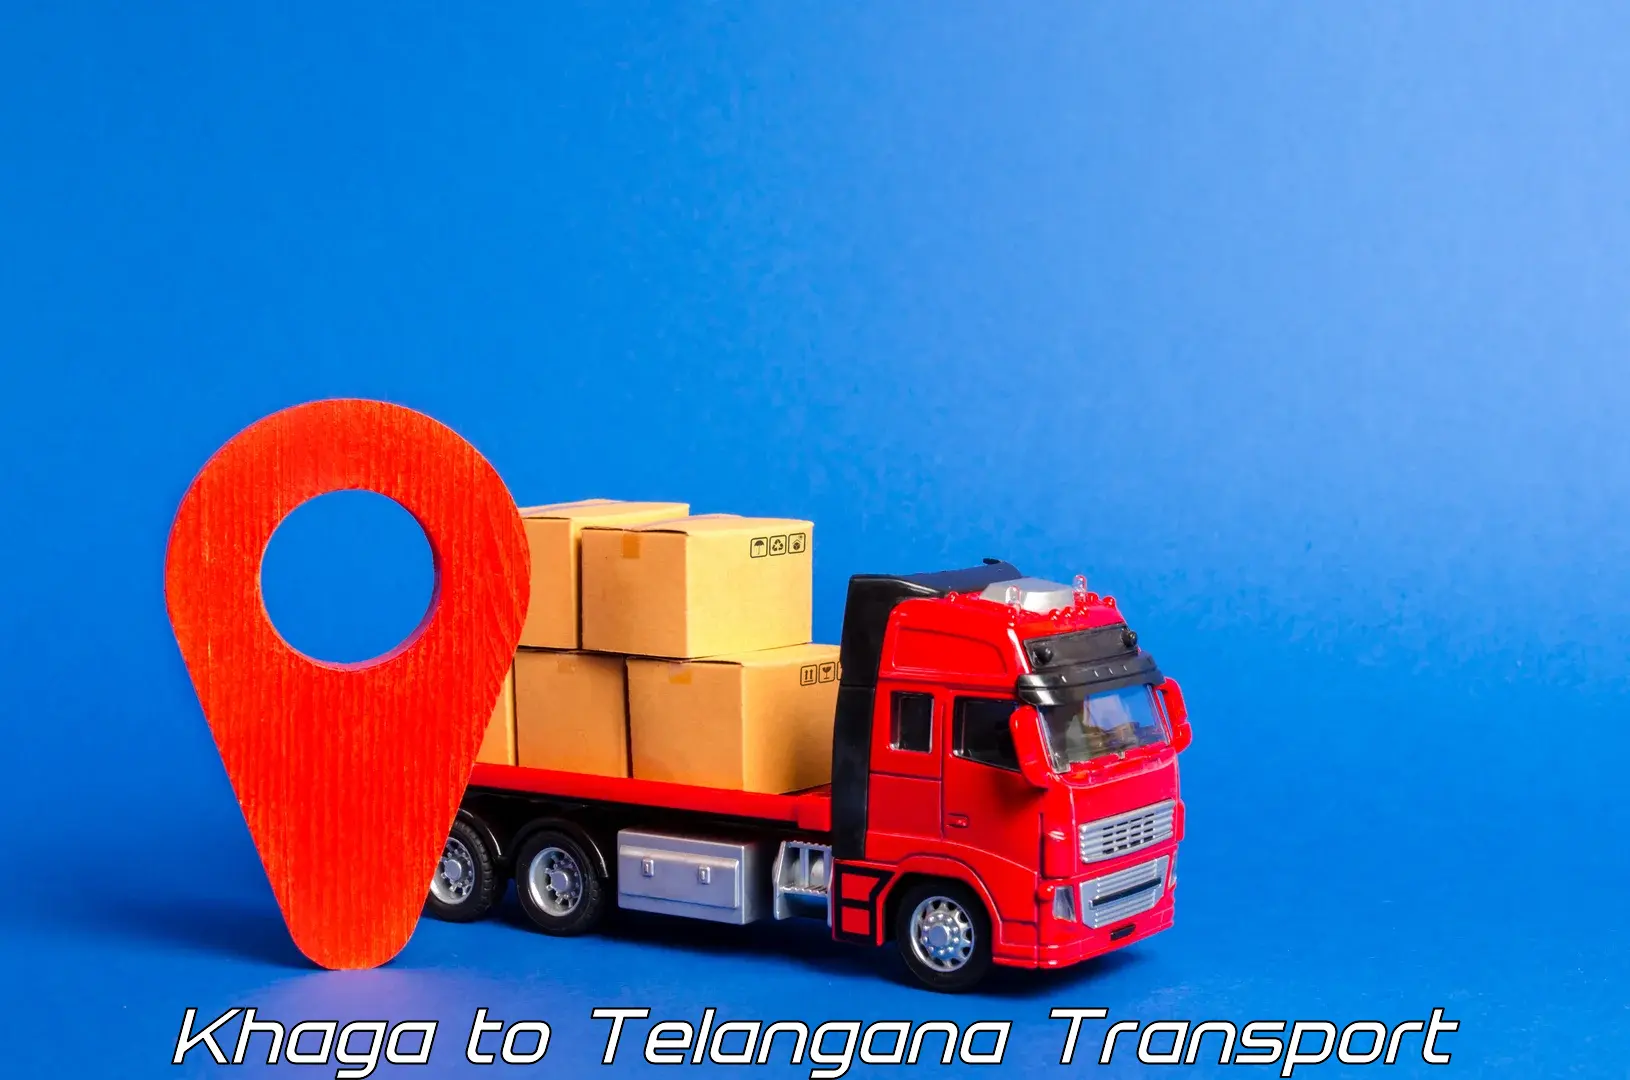 Daily parcel service transport Khaga to Kaghaznagar